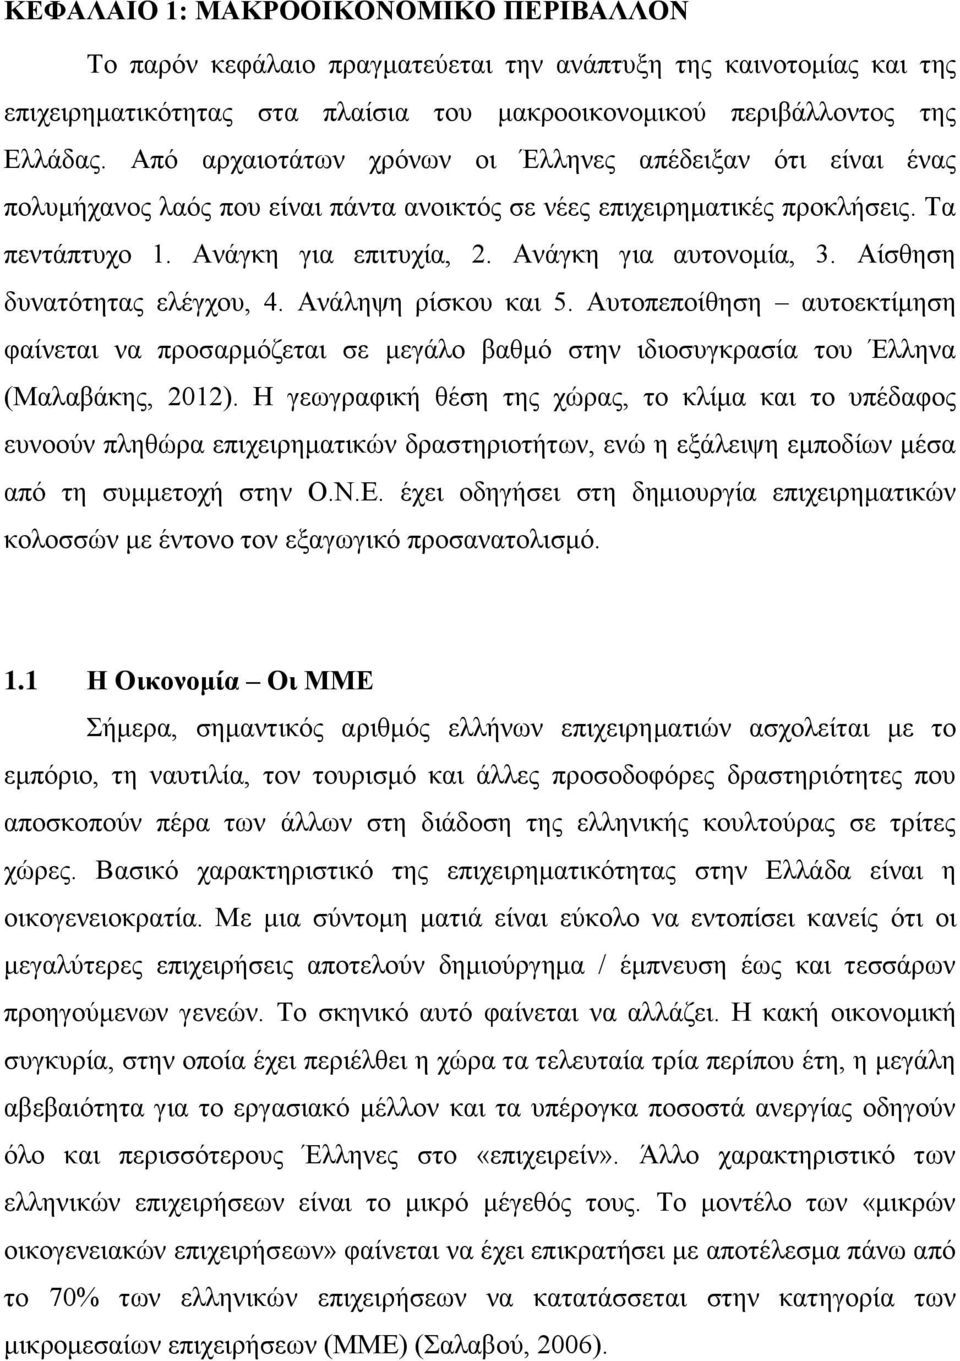 Ανάγκη για αυτονομία, 3. Αίσθηση δυνατότητας ελέγχου, 4. Ανάληψη ρίσκου και 5. Αυτοπεποίθηση αυτοεκτίμηση φαίνεται να προσαρμόζεται σε μεγάλο βαθμό στην ιδιοσυγκρασία του Έλληνα (Μαλαβάκης, 2012).